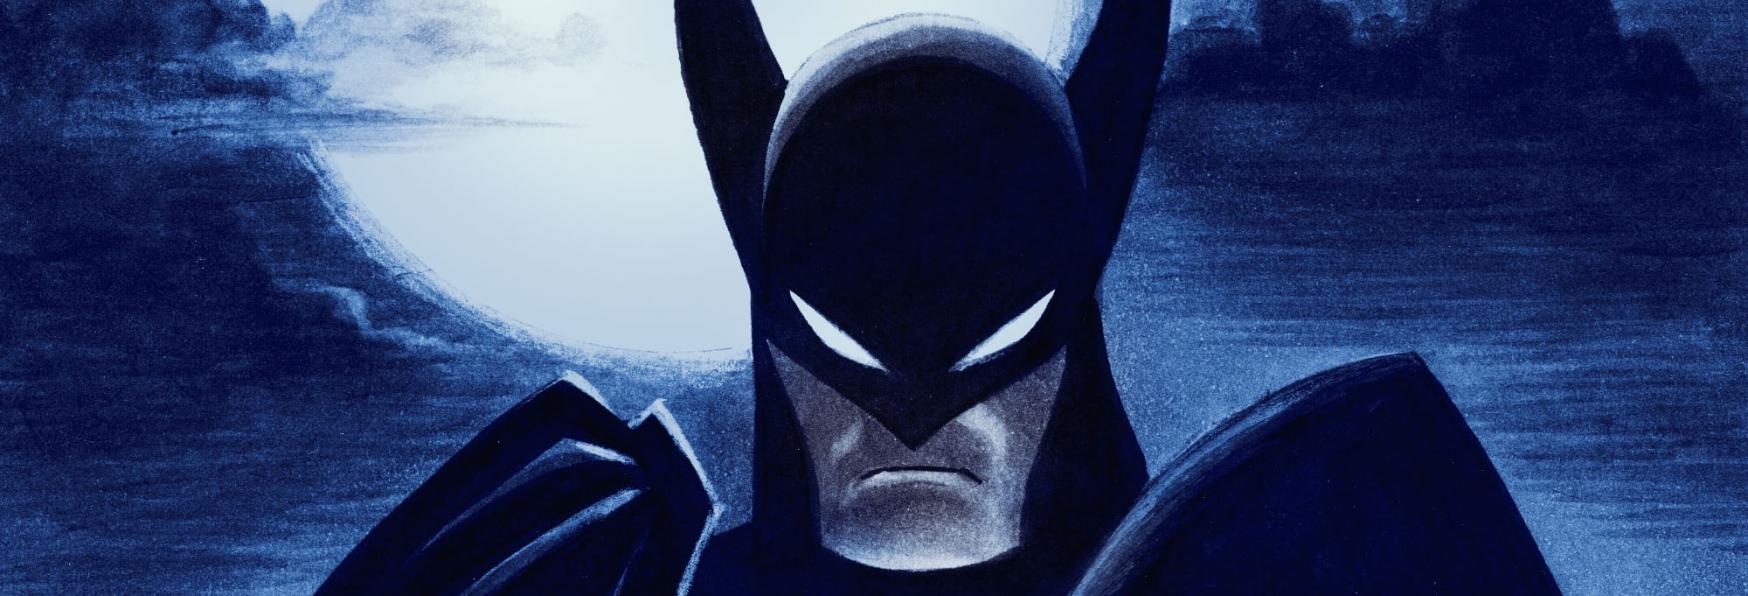 Batman: Caped Crusader - il Fumettista Ed Brubaker nel Team Creativo della Serie TV